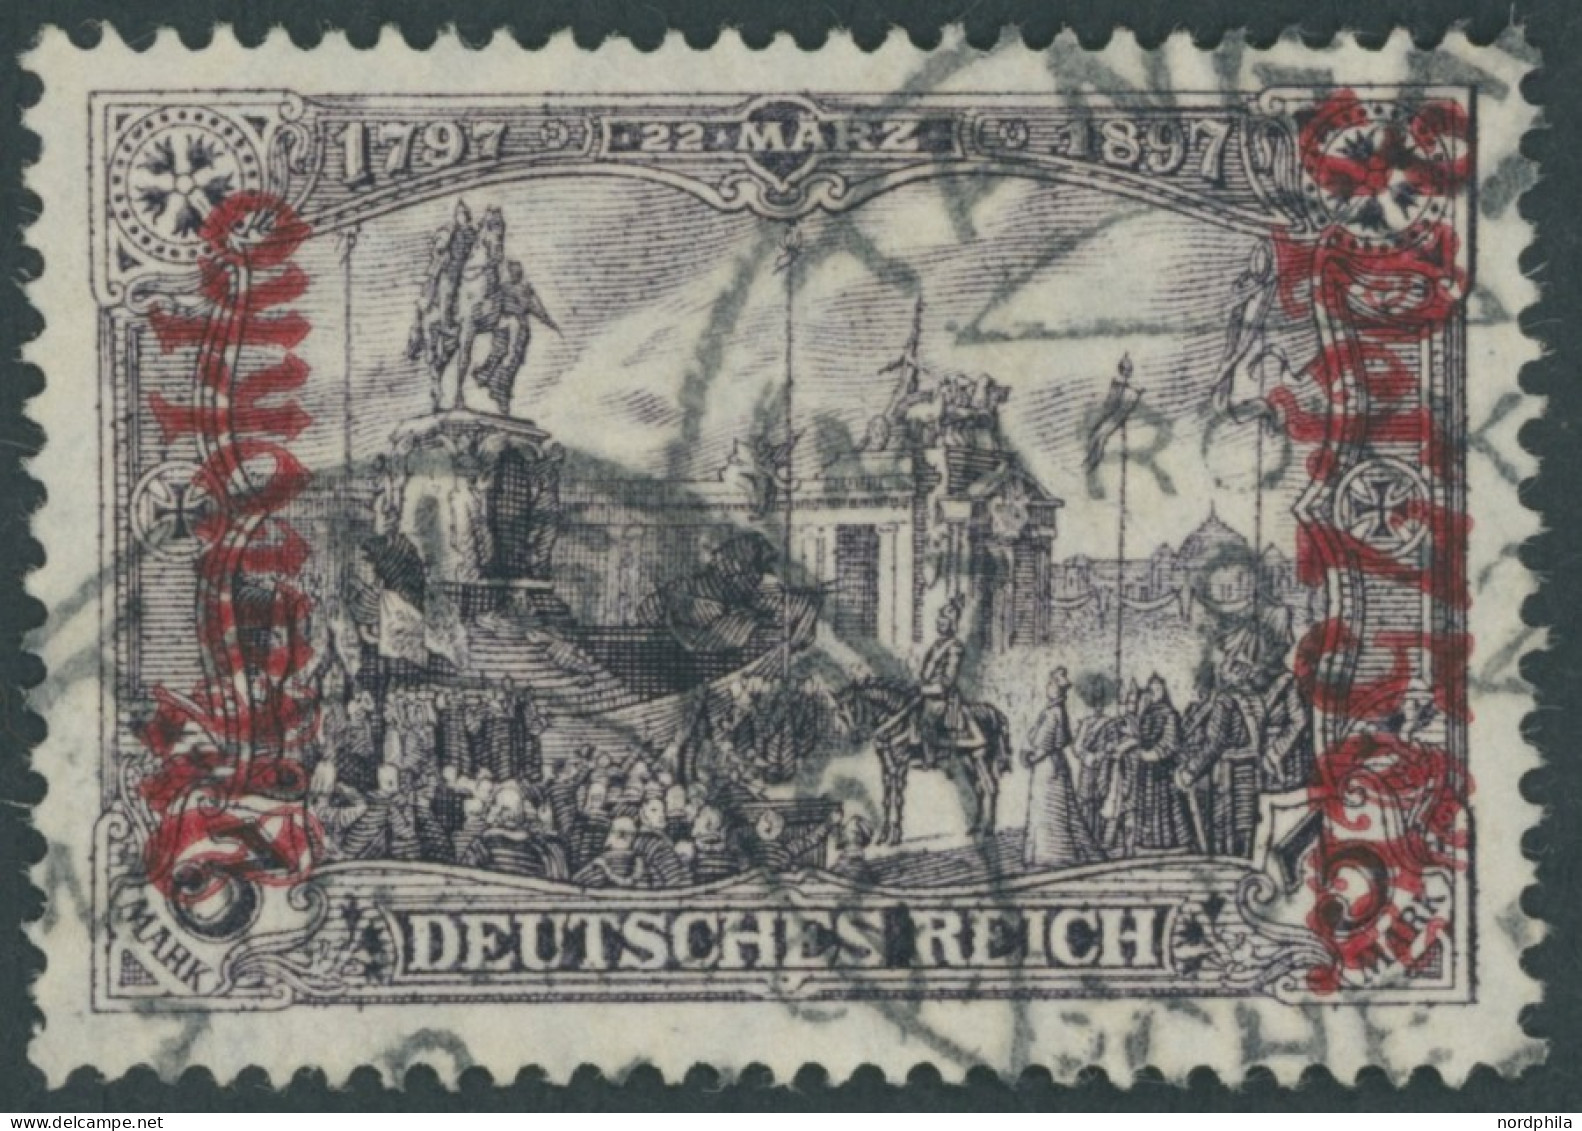 DP IN MAROKKO 57IA O, 1911, 3 P. 75 C. Auf 3 M., Friedensdruck, Feinst (kleine Helle Stelle), Mi. 260.- - Deutsche Post In Marokko